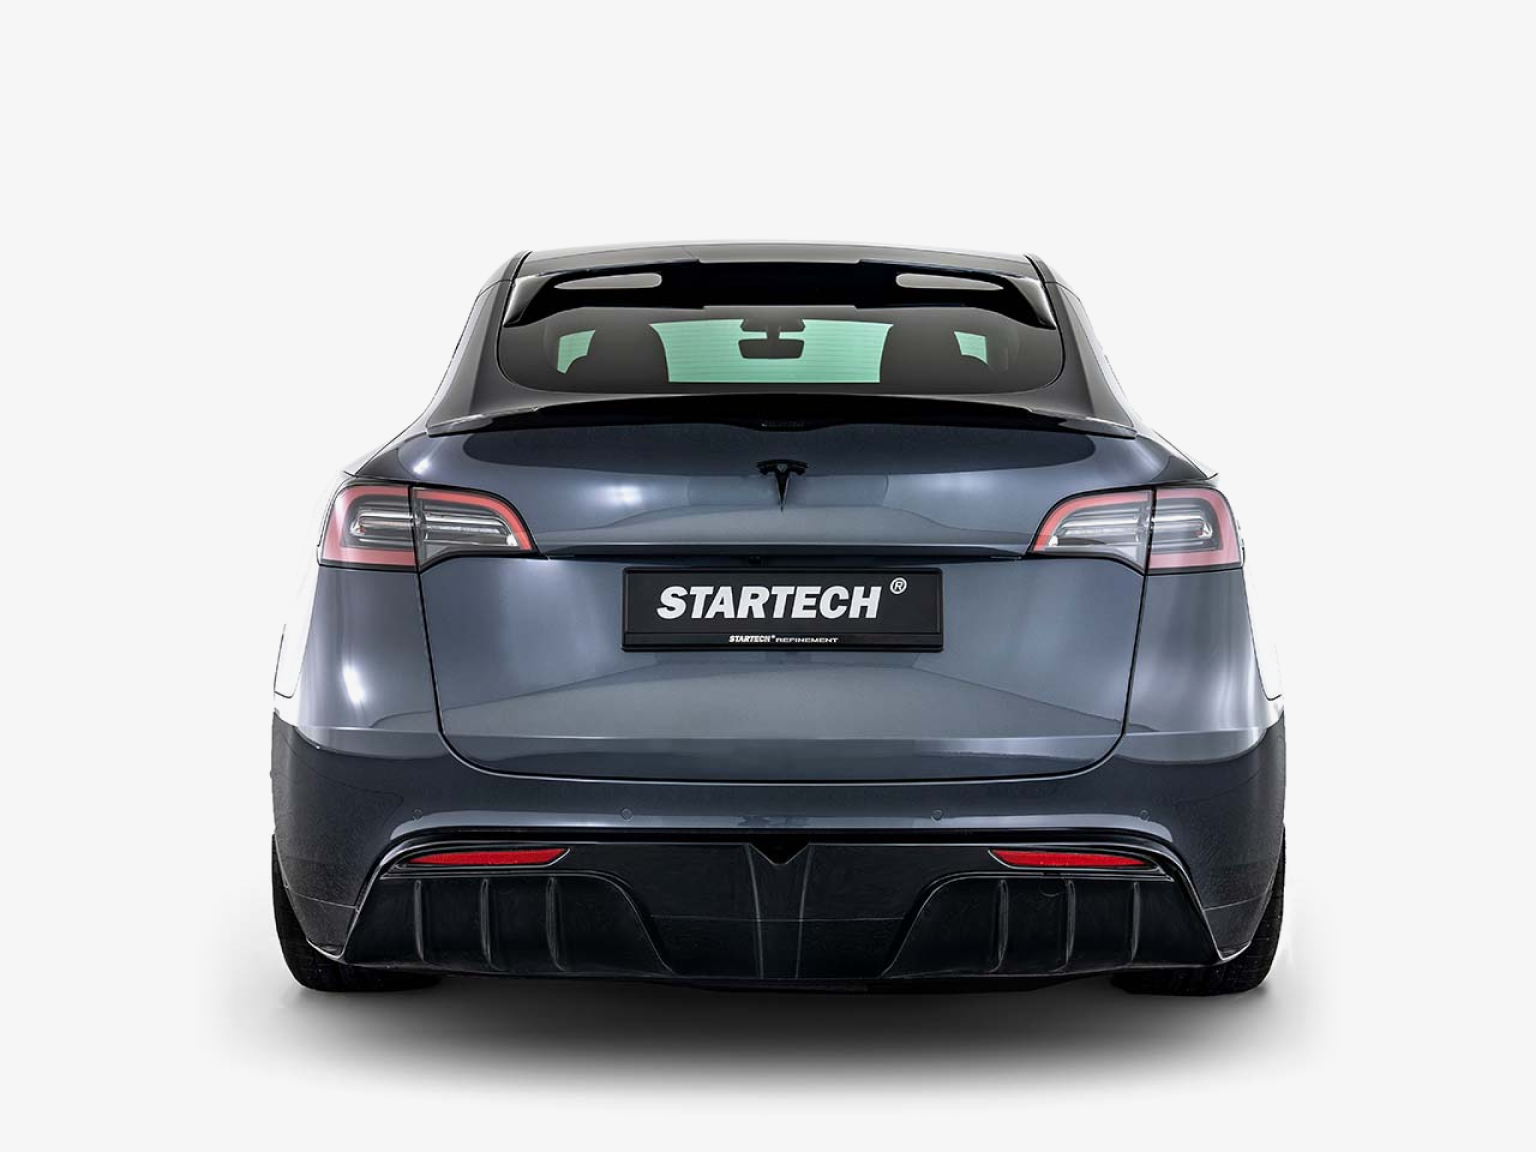 Startech Complete Exterior Kit for Tesla Model Y (2020+)